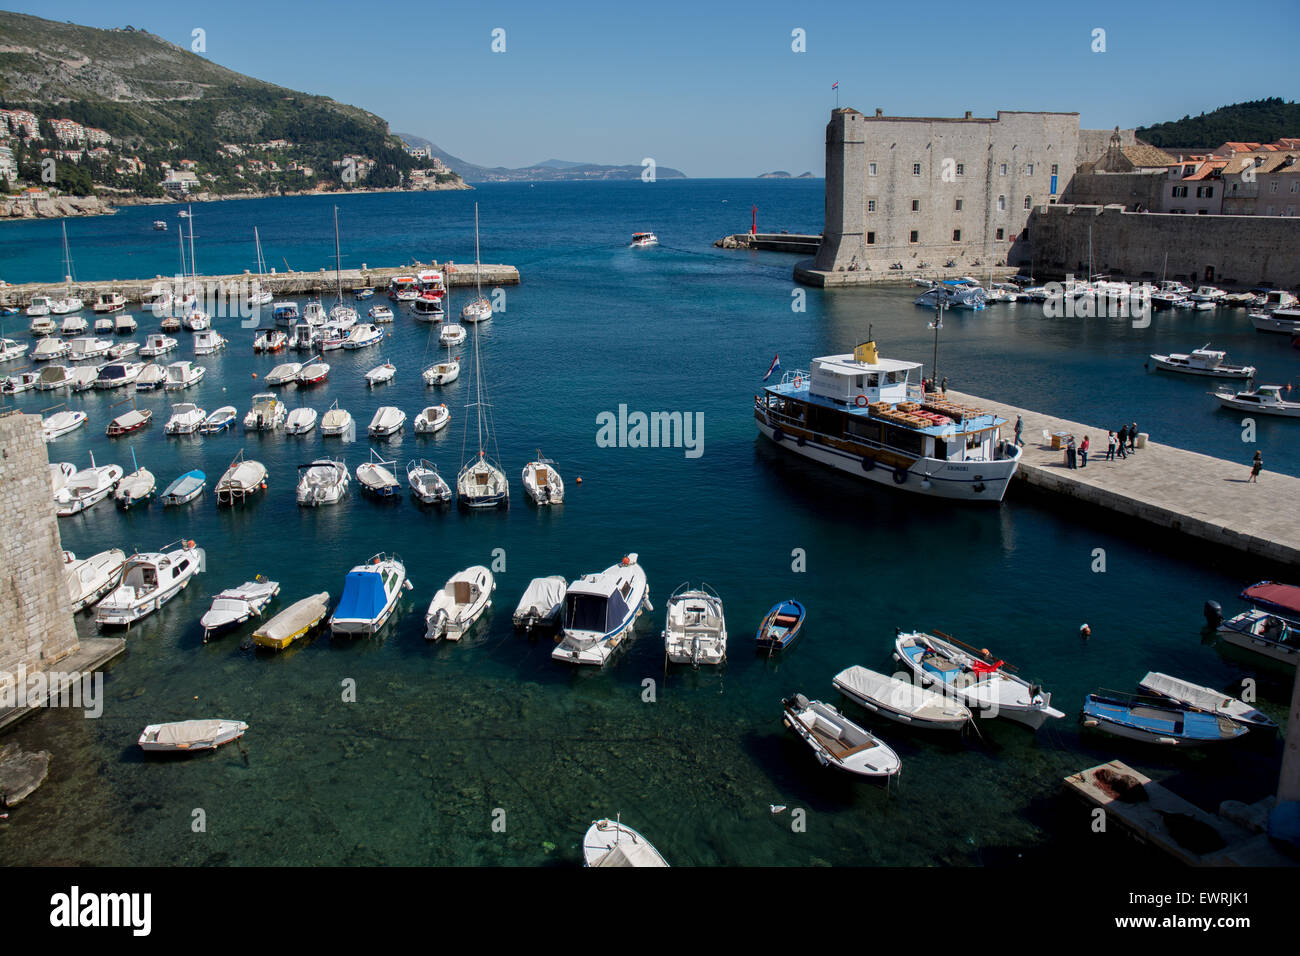 Vieille ville et port st. john's fort, Dubrovnik, Croatie Banque D'Images